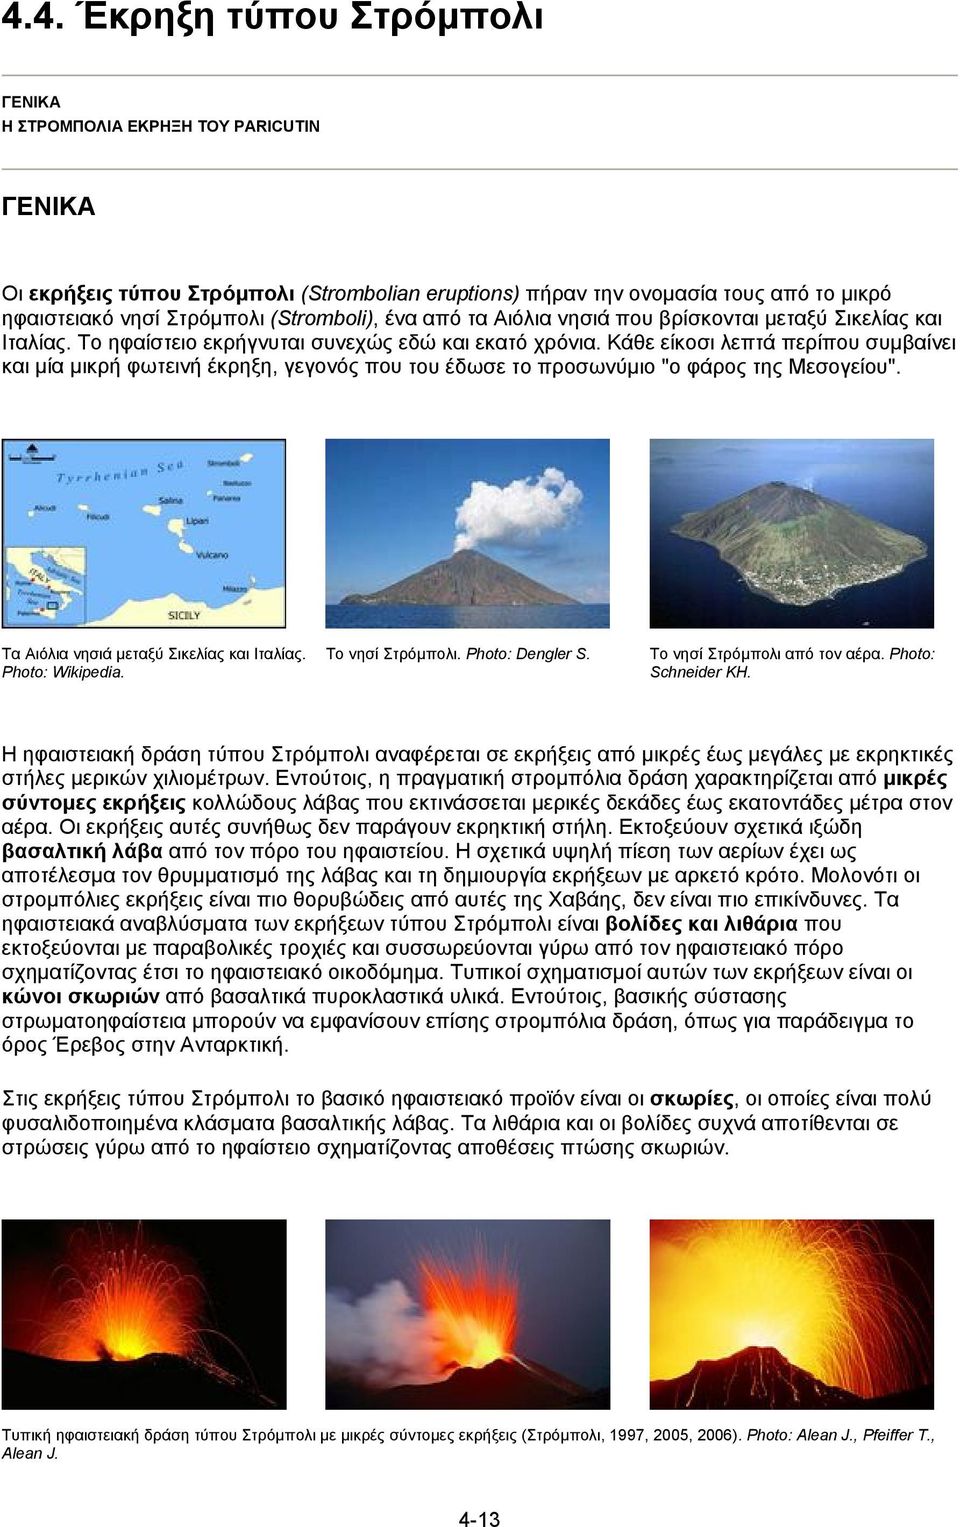 Κάθε είκοσι λεπτά περίπου συµβαίνει και µία µικρή φωτεινή έκρηξη, γεγονός που του έδωσε το προσωνύµιο "ο φάρος της Μεσογείου". Τα Αιόλια νησιά µεταξύ Σικελίας και Ιταλίας. Photo: Wikipedia.